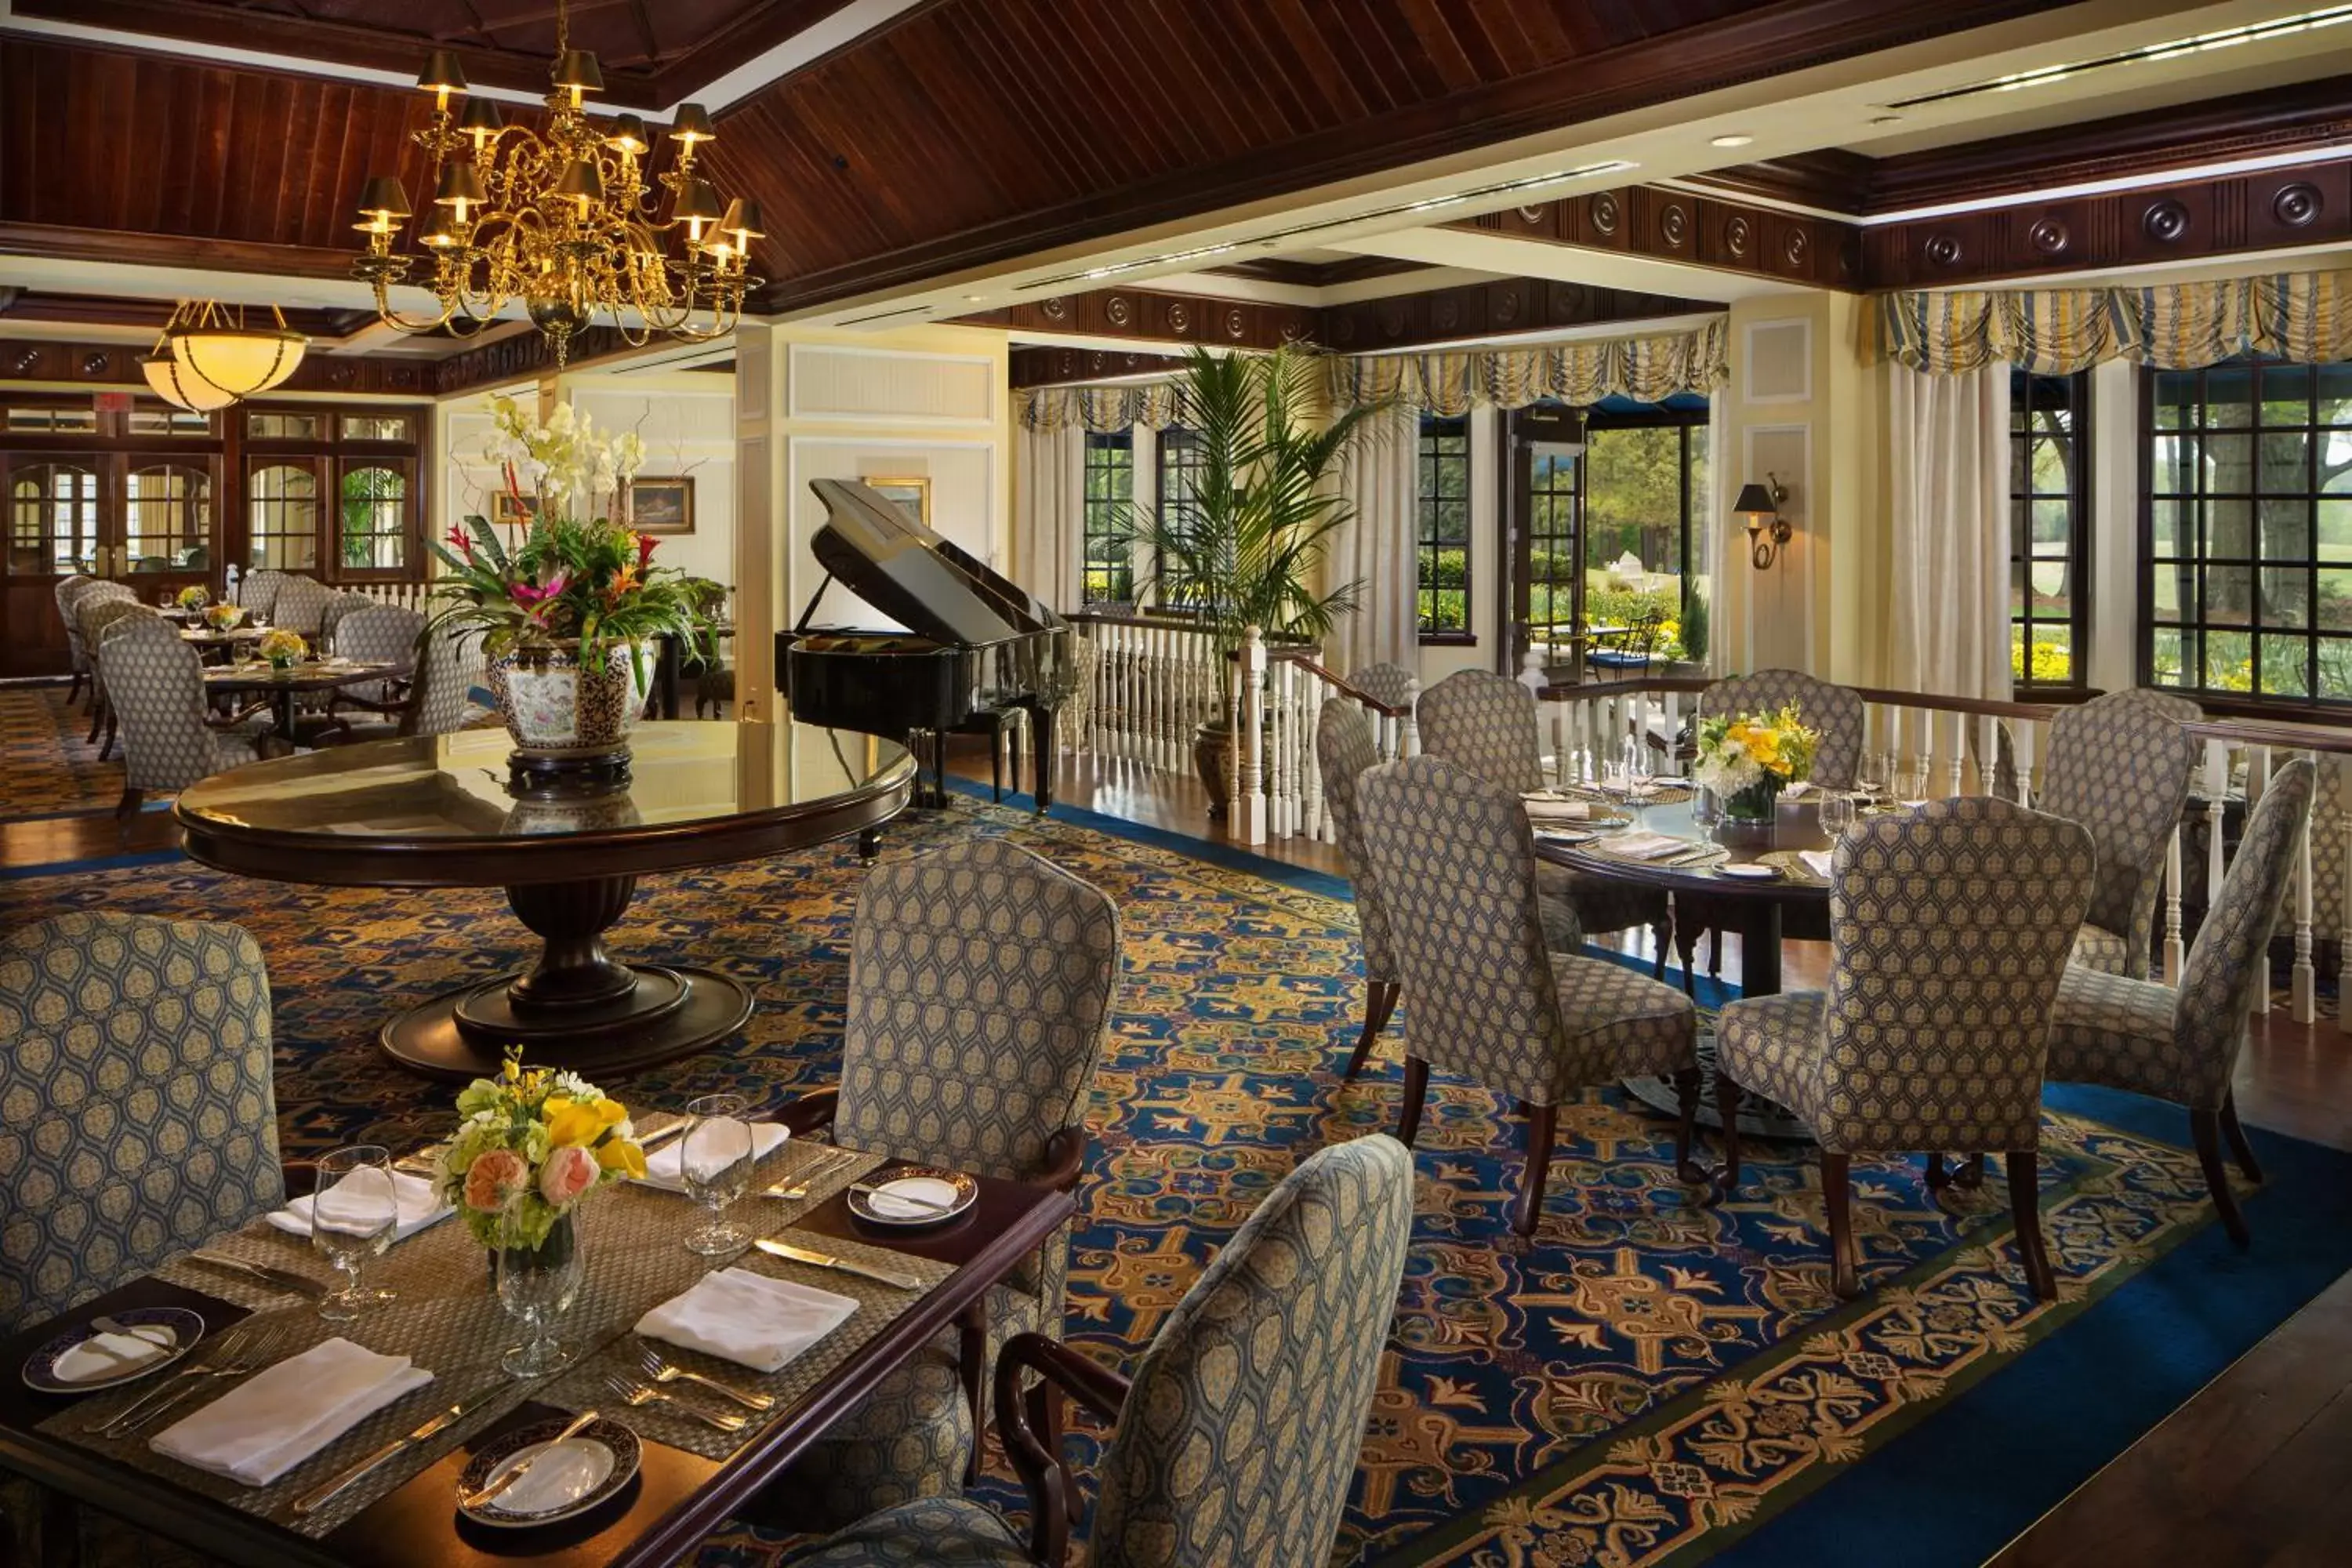 Restaurant/Places to Eat in Washington Duke Inn & Golf Club